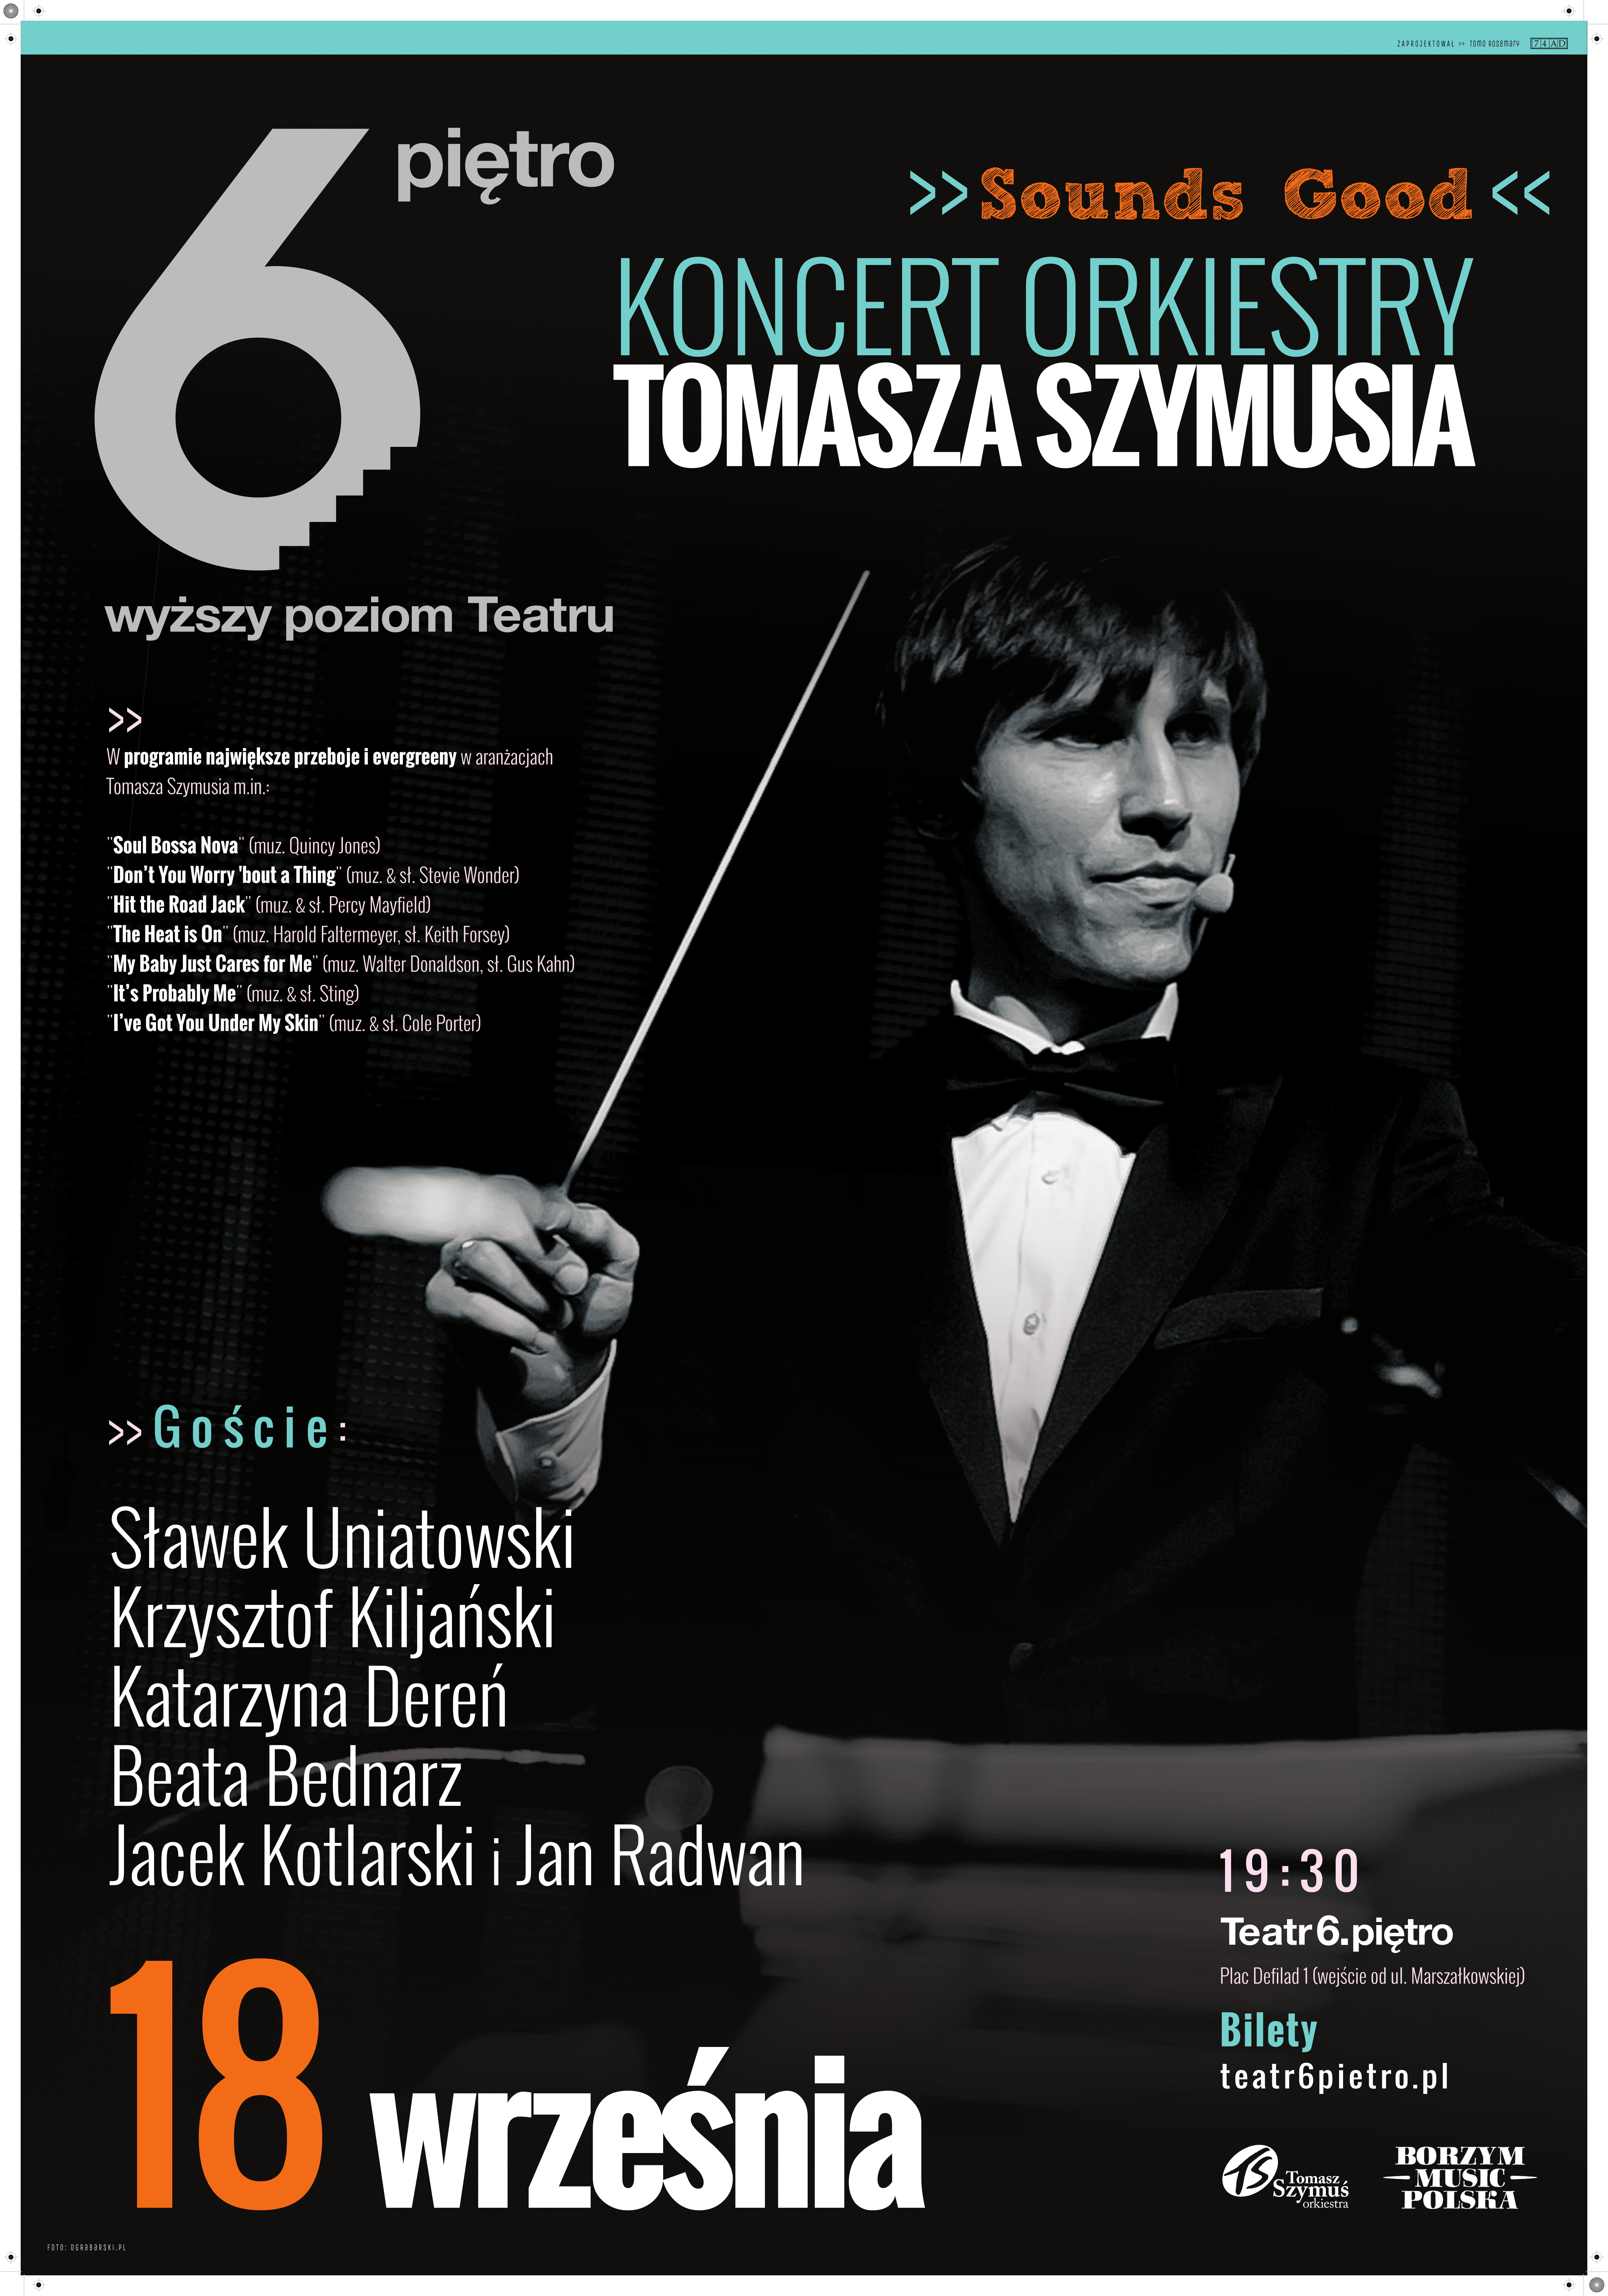 Tomek Szymuś - Sounds Good